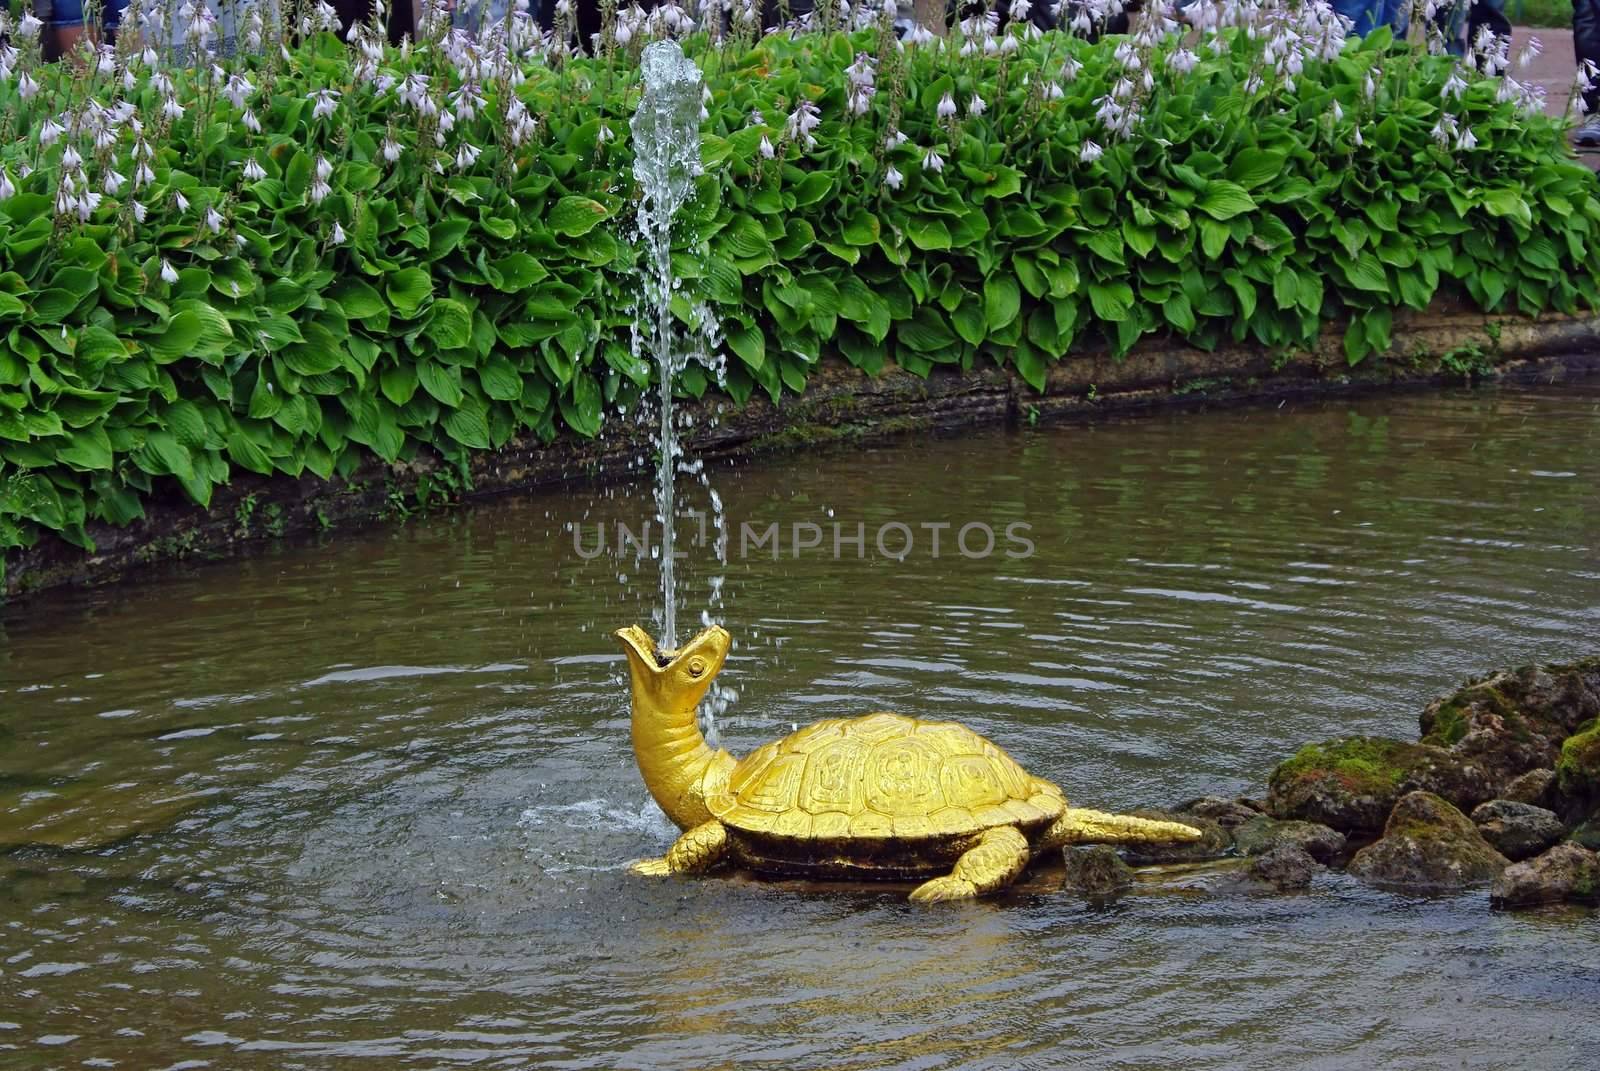 Fountain "The Turtles" In Peterhof, St Petersburg by Vitamin